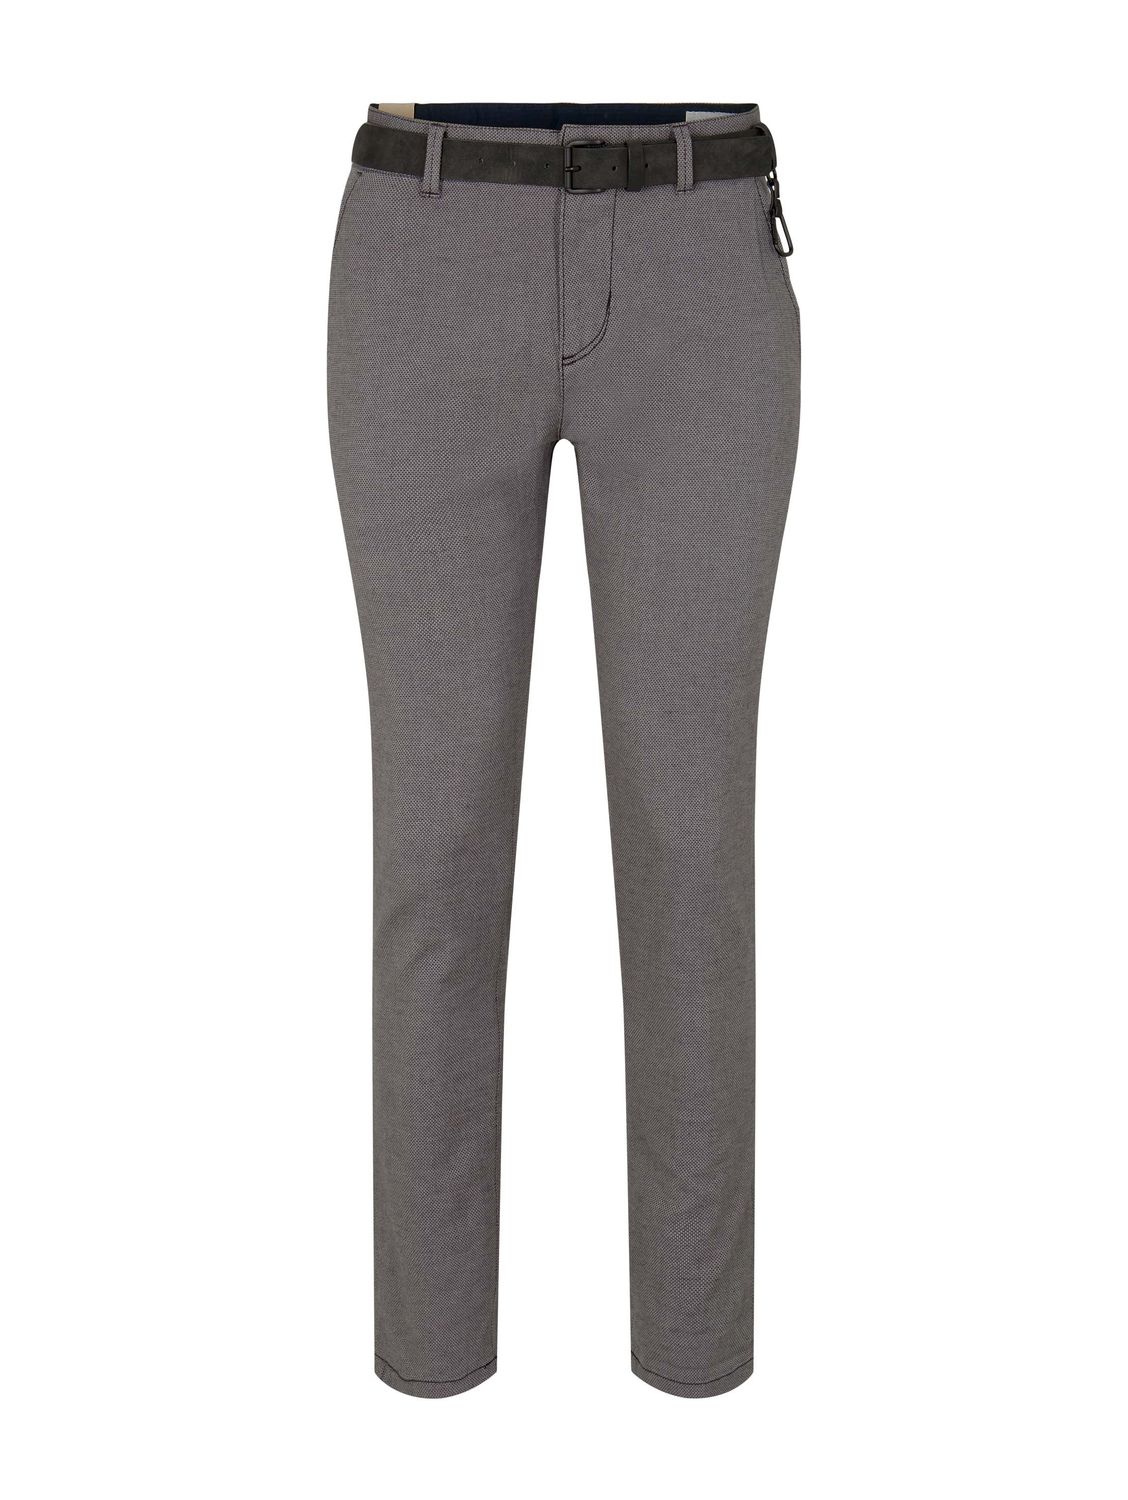 Тканевые брюки TOM TAILOR Denim Stoff/Chino Chino mit Gürtel regular/straight, серый толстовка tom tailor размер xl серый